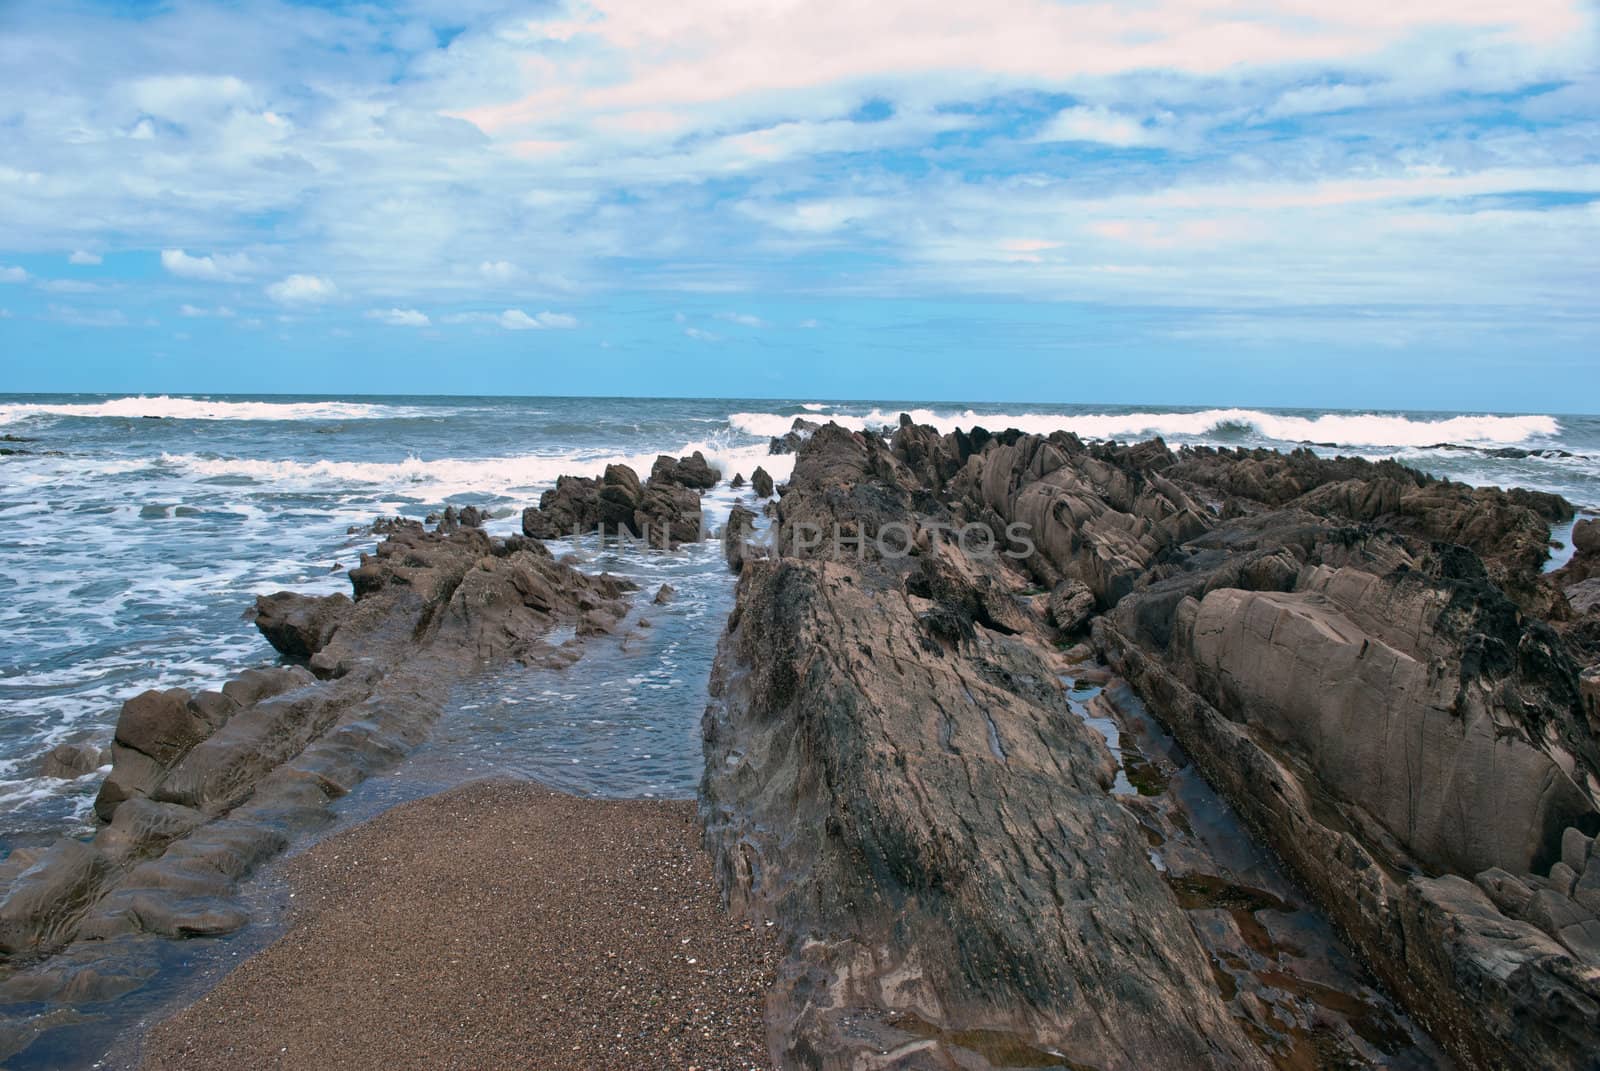 the Atlantic Ocean, Uruguay by lauria